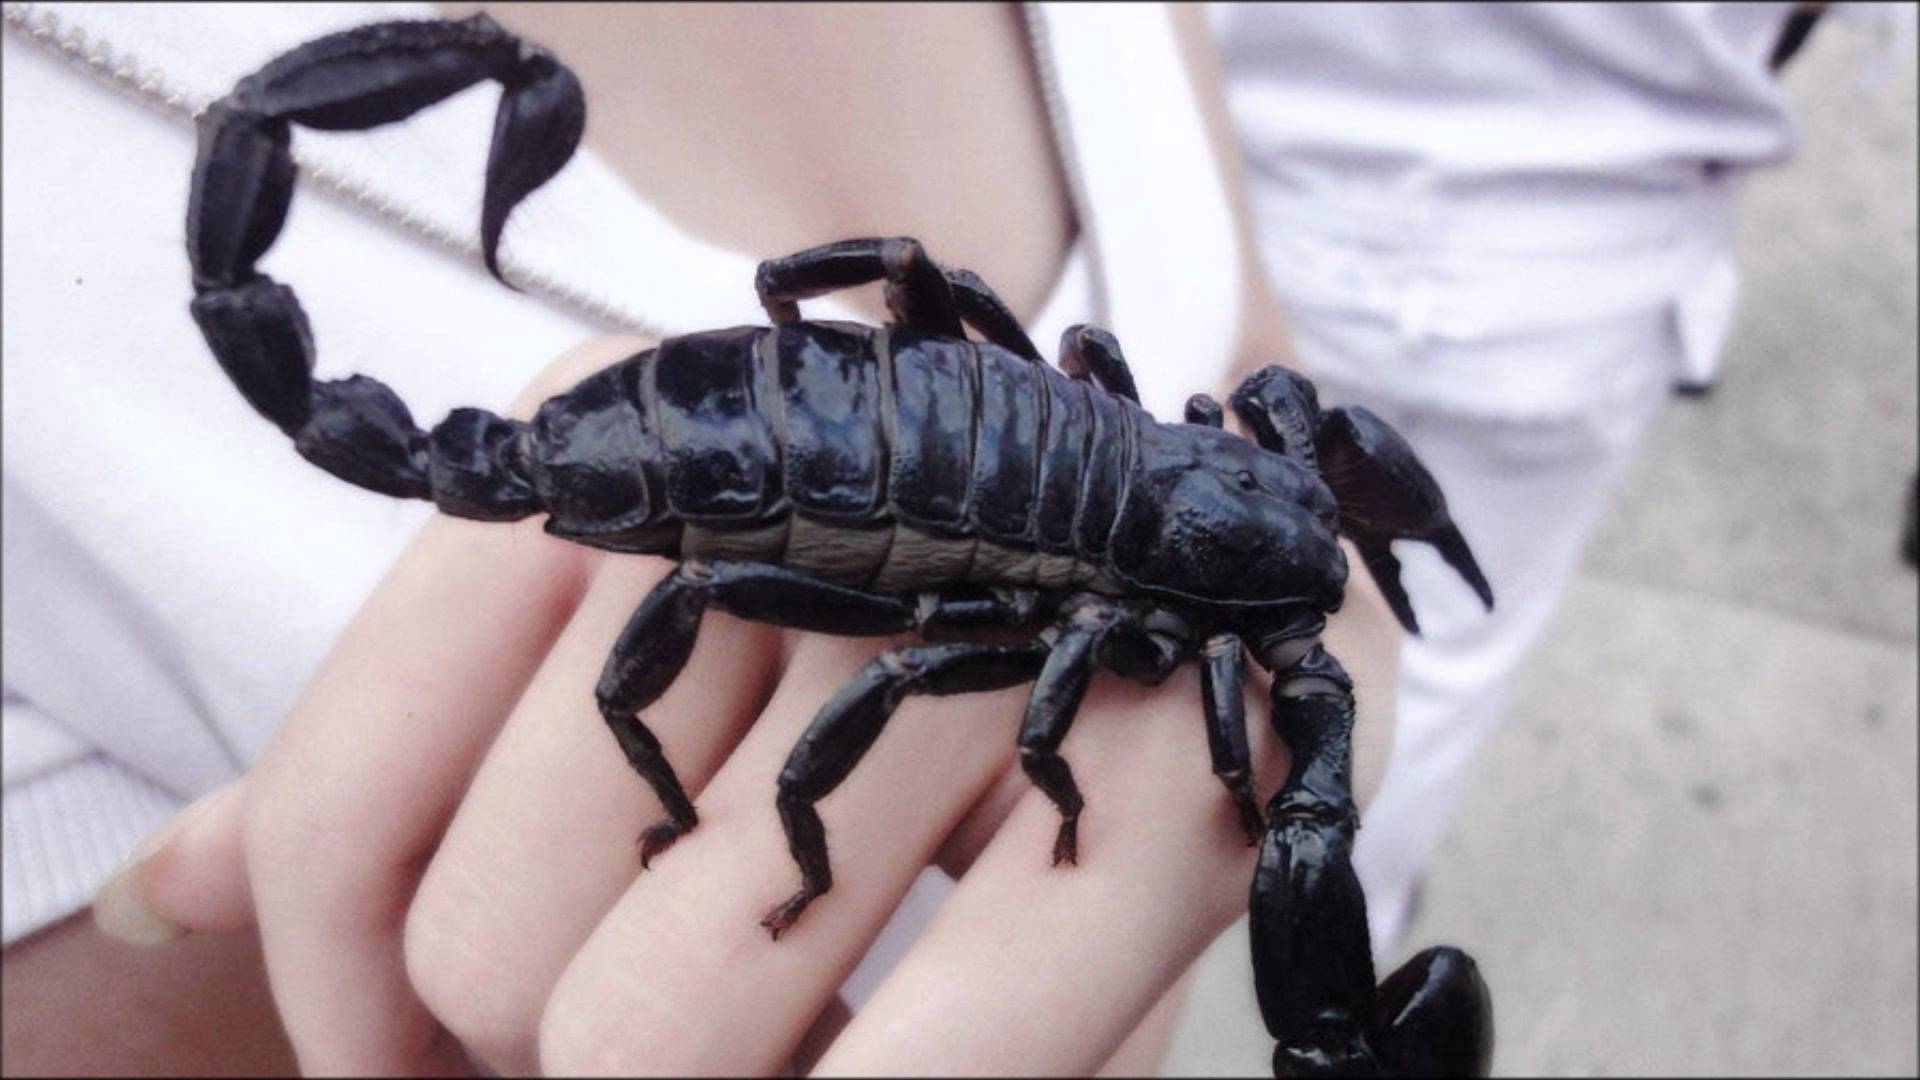 Black scorpion photo